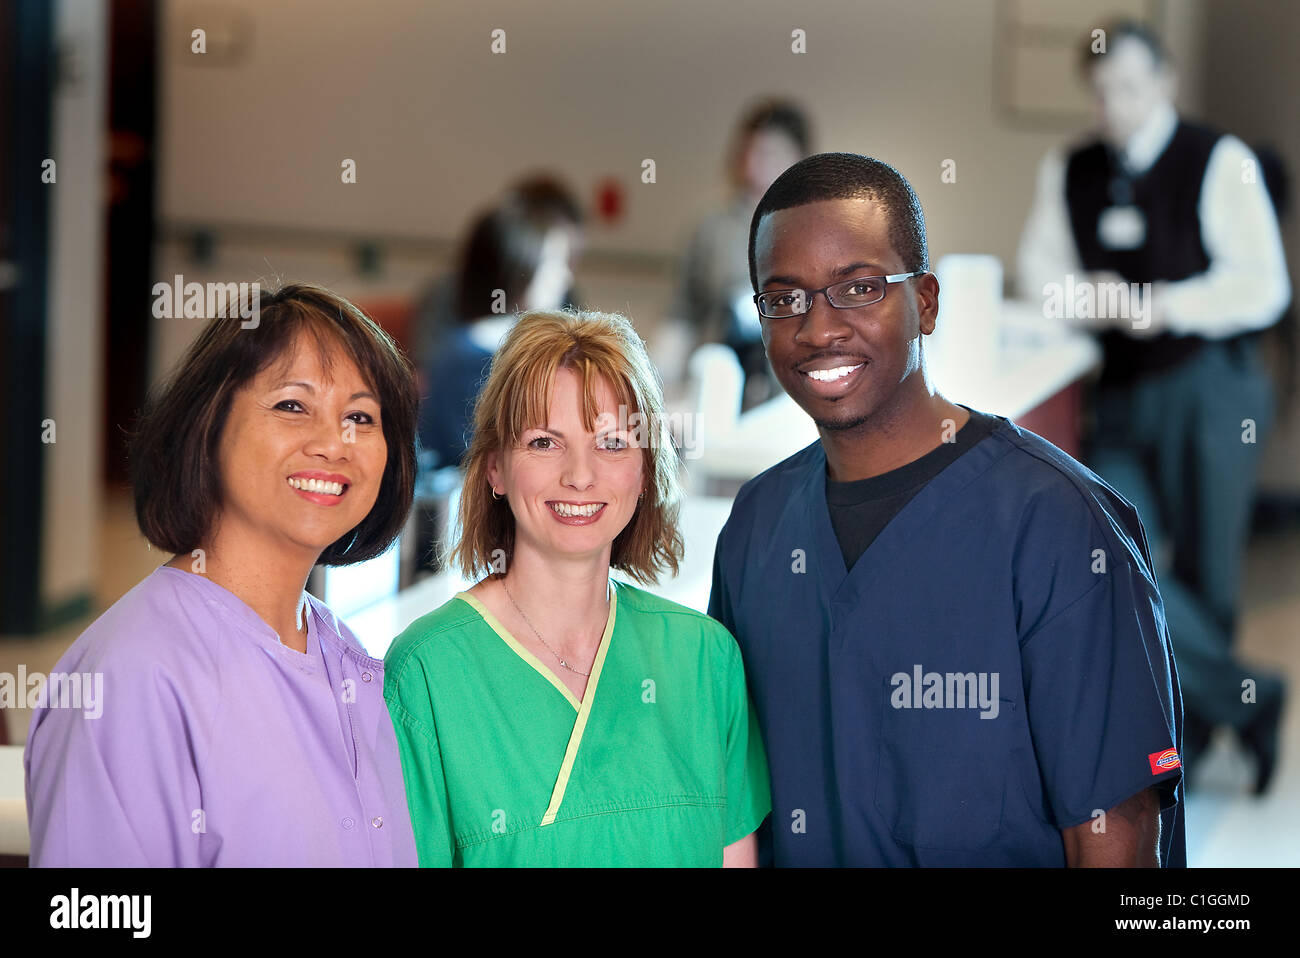 Las enfermeras de un hospital. Diversos orígenes étnicos. Fotos relacionadas con Cuidado de la salud. Foto de stock